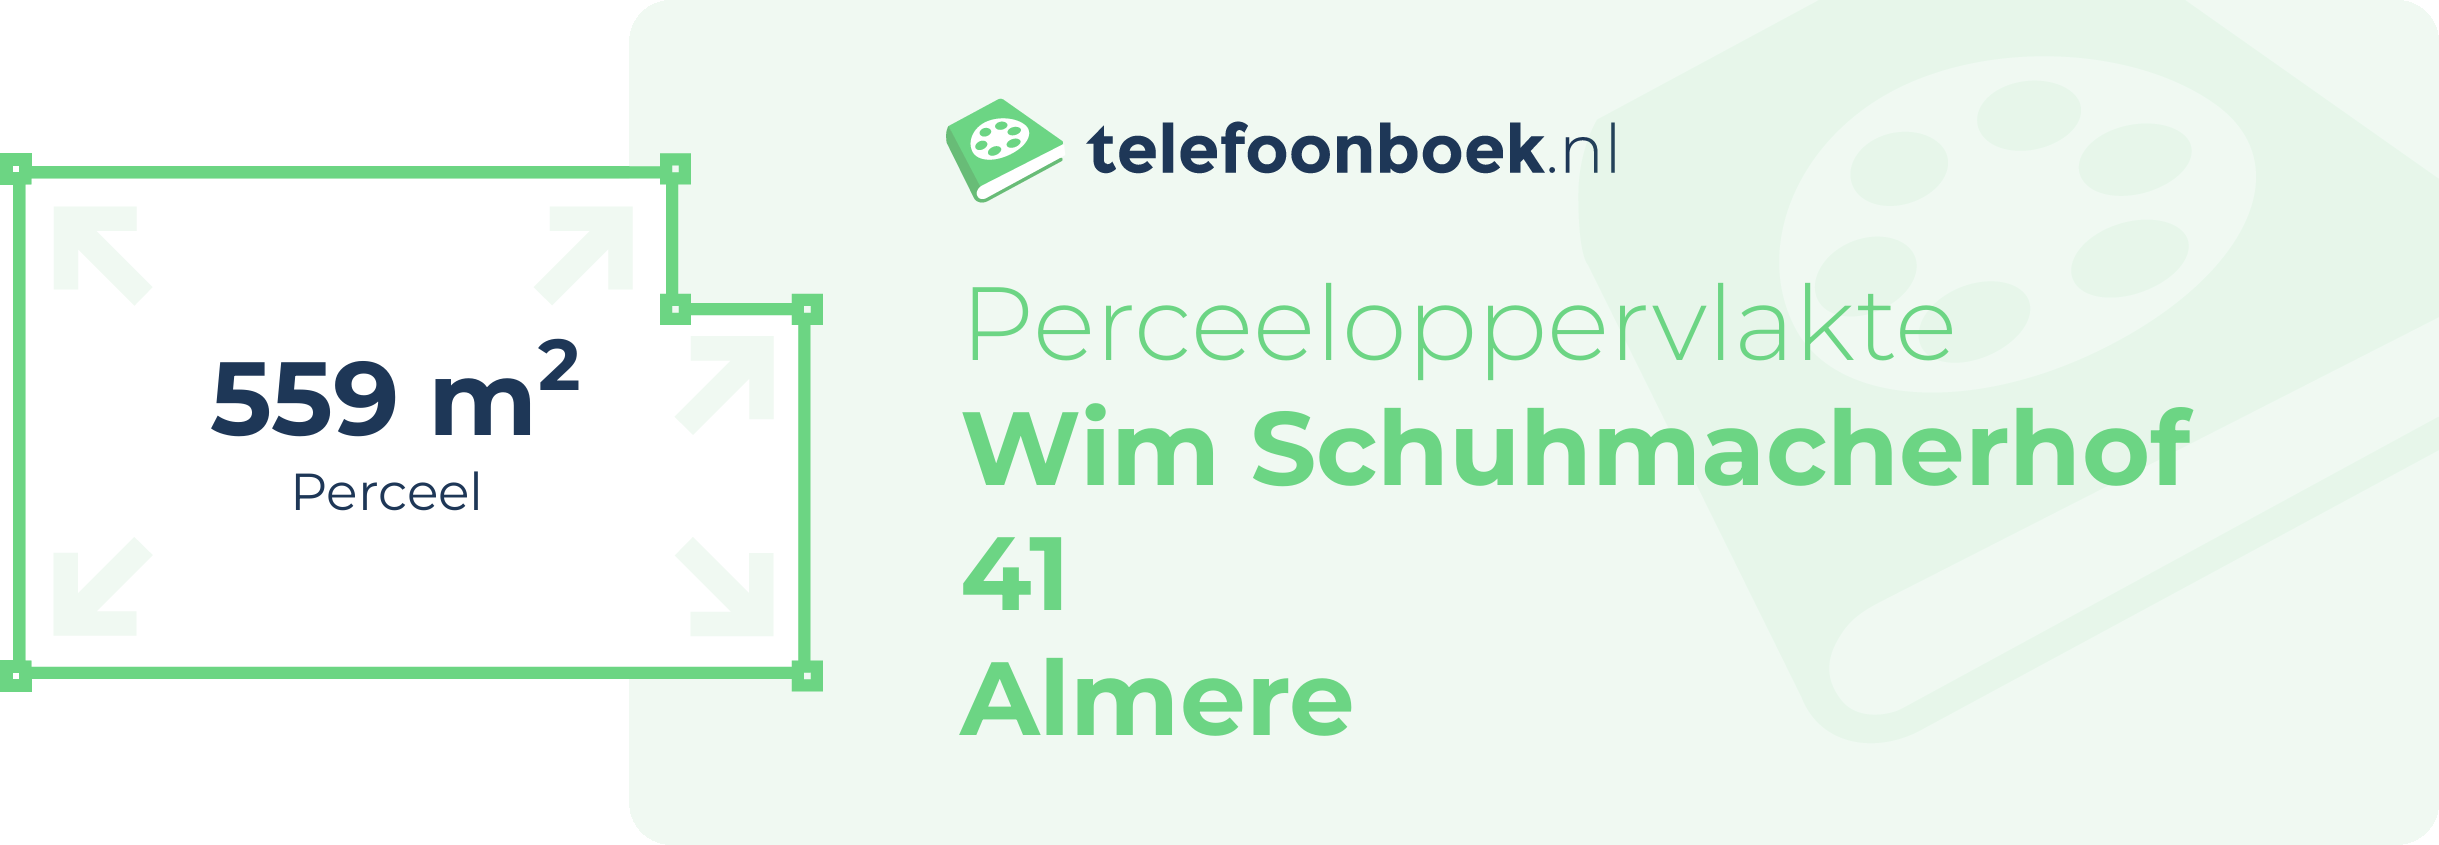 Perceeloppervlakte Wim Schuhmacherhof 41 Almere